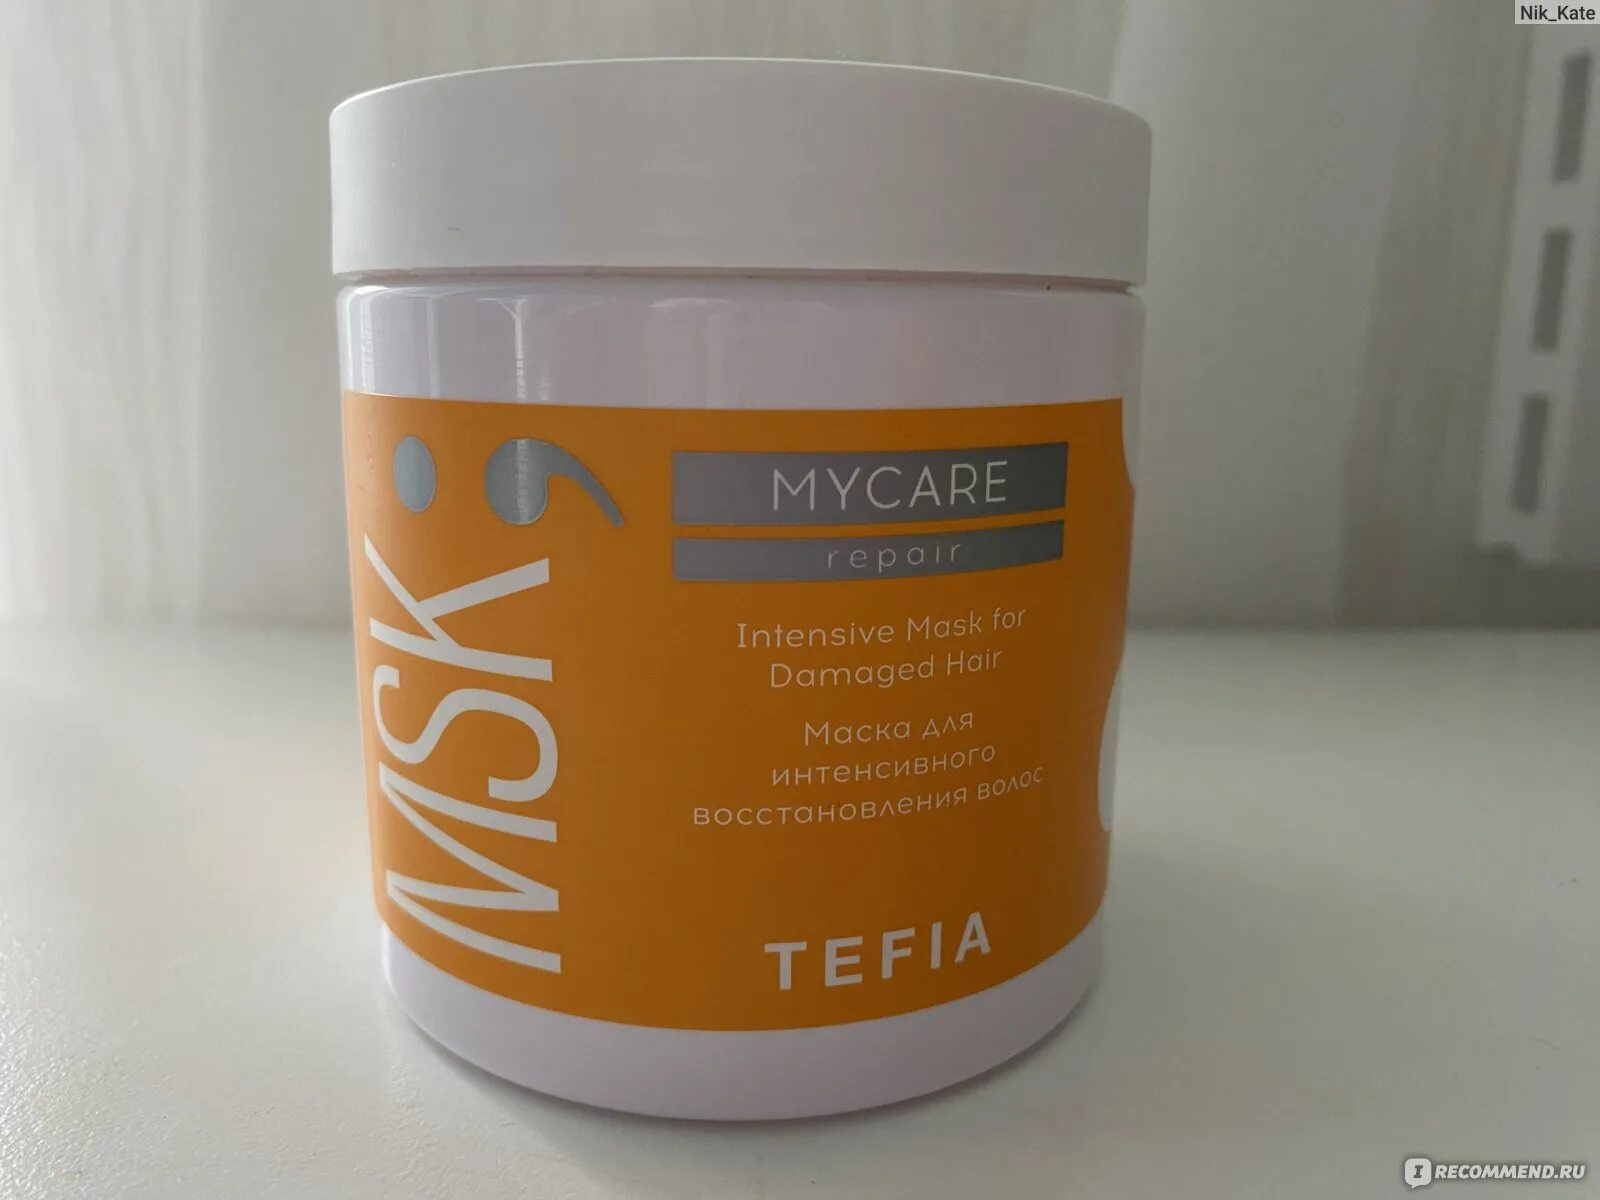 Тефия маска для интенсивного восстановления. Tefia MYCARE Repair. Тефия уплотняющая маска для тонких волос. Маска для окрашенных волос профессиональная MYCARE Тефиа состав.